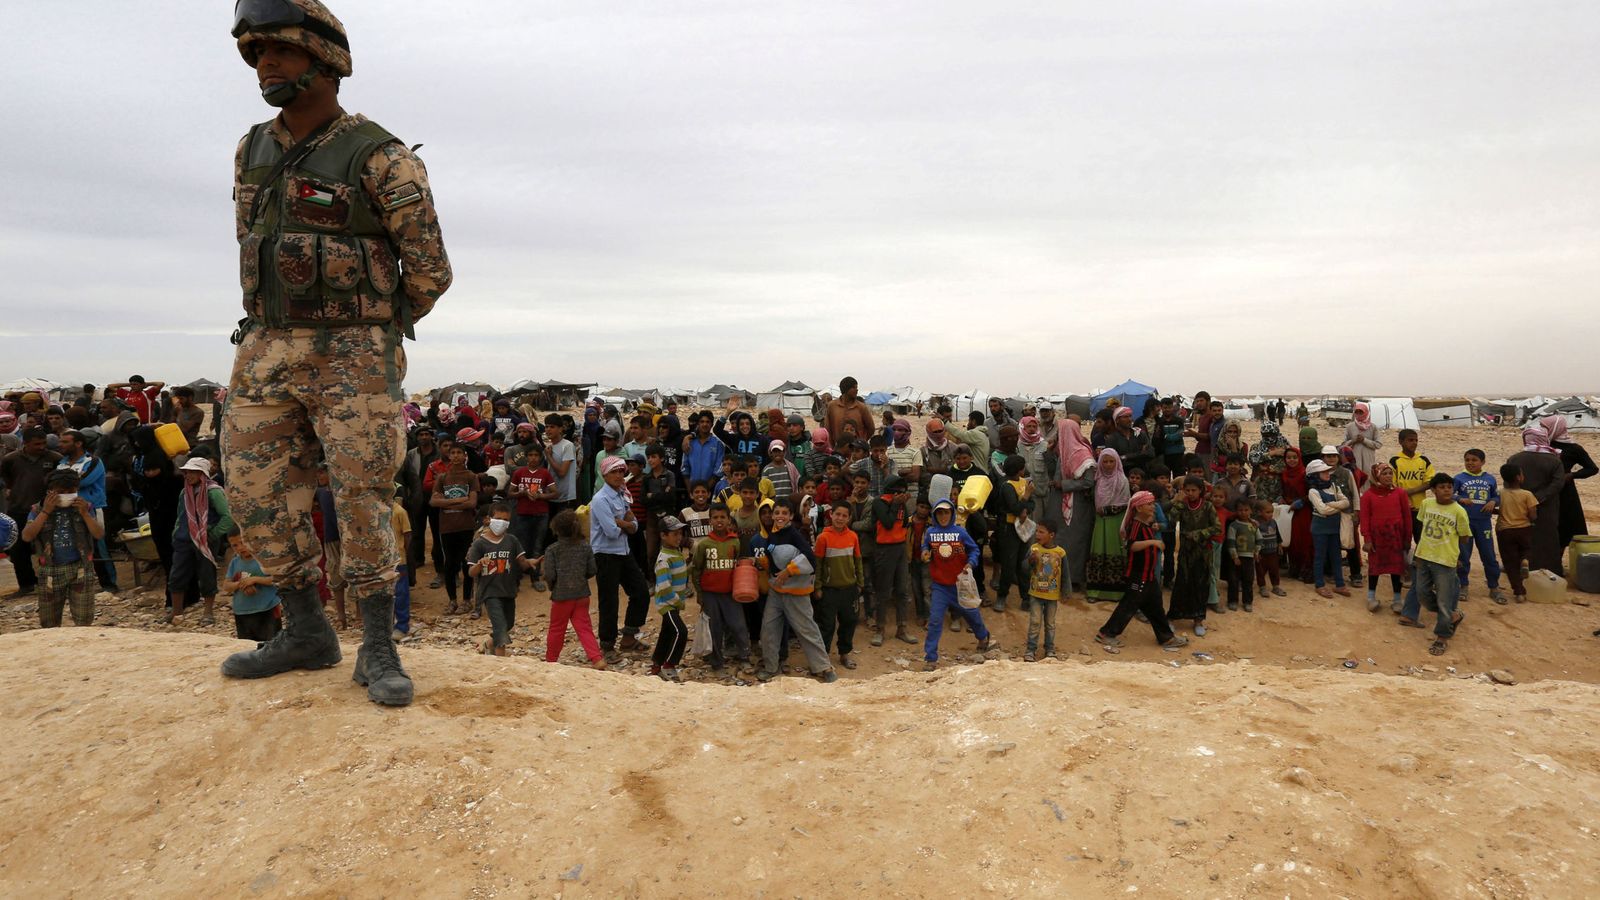 Foto: Un soldado jordano monta guardia frente a un grupo de refugiados sirios atrapados en la frontera, cerca de Ruwaished (Reuters)